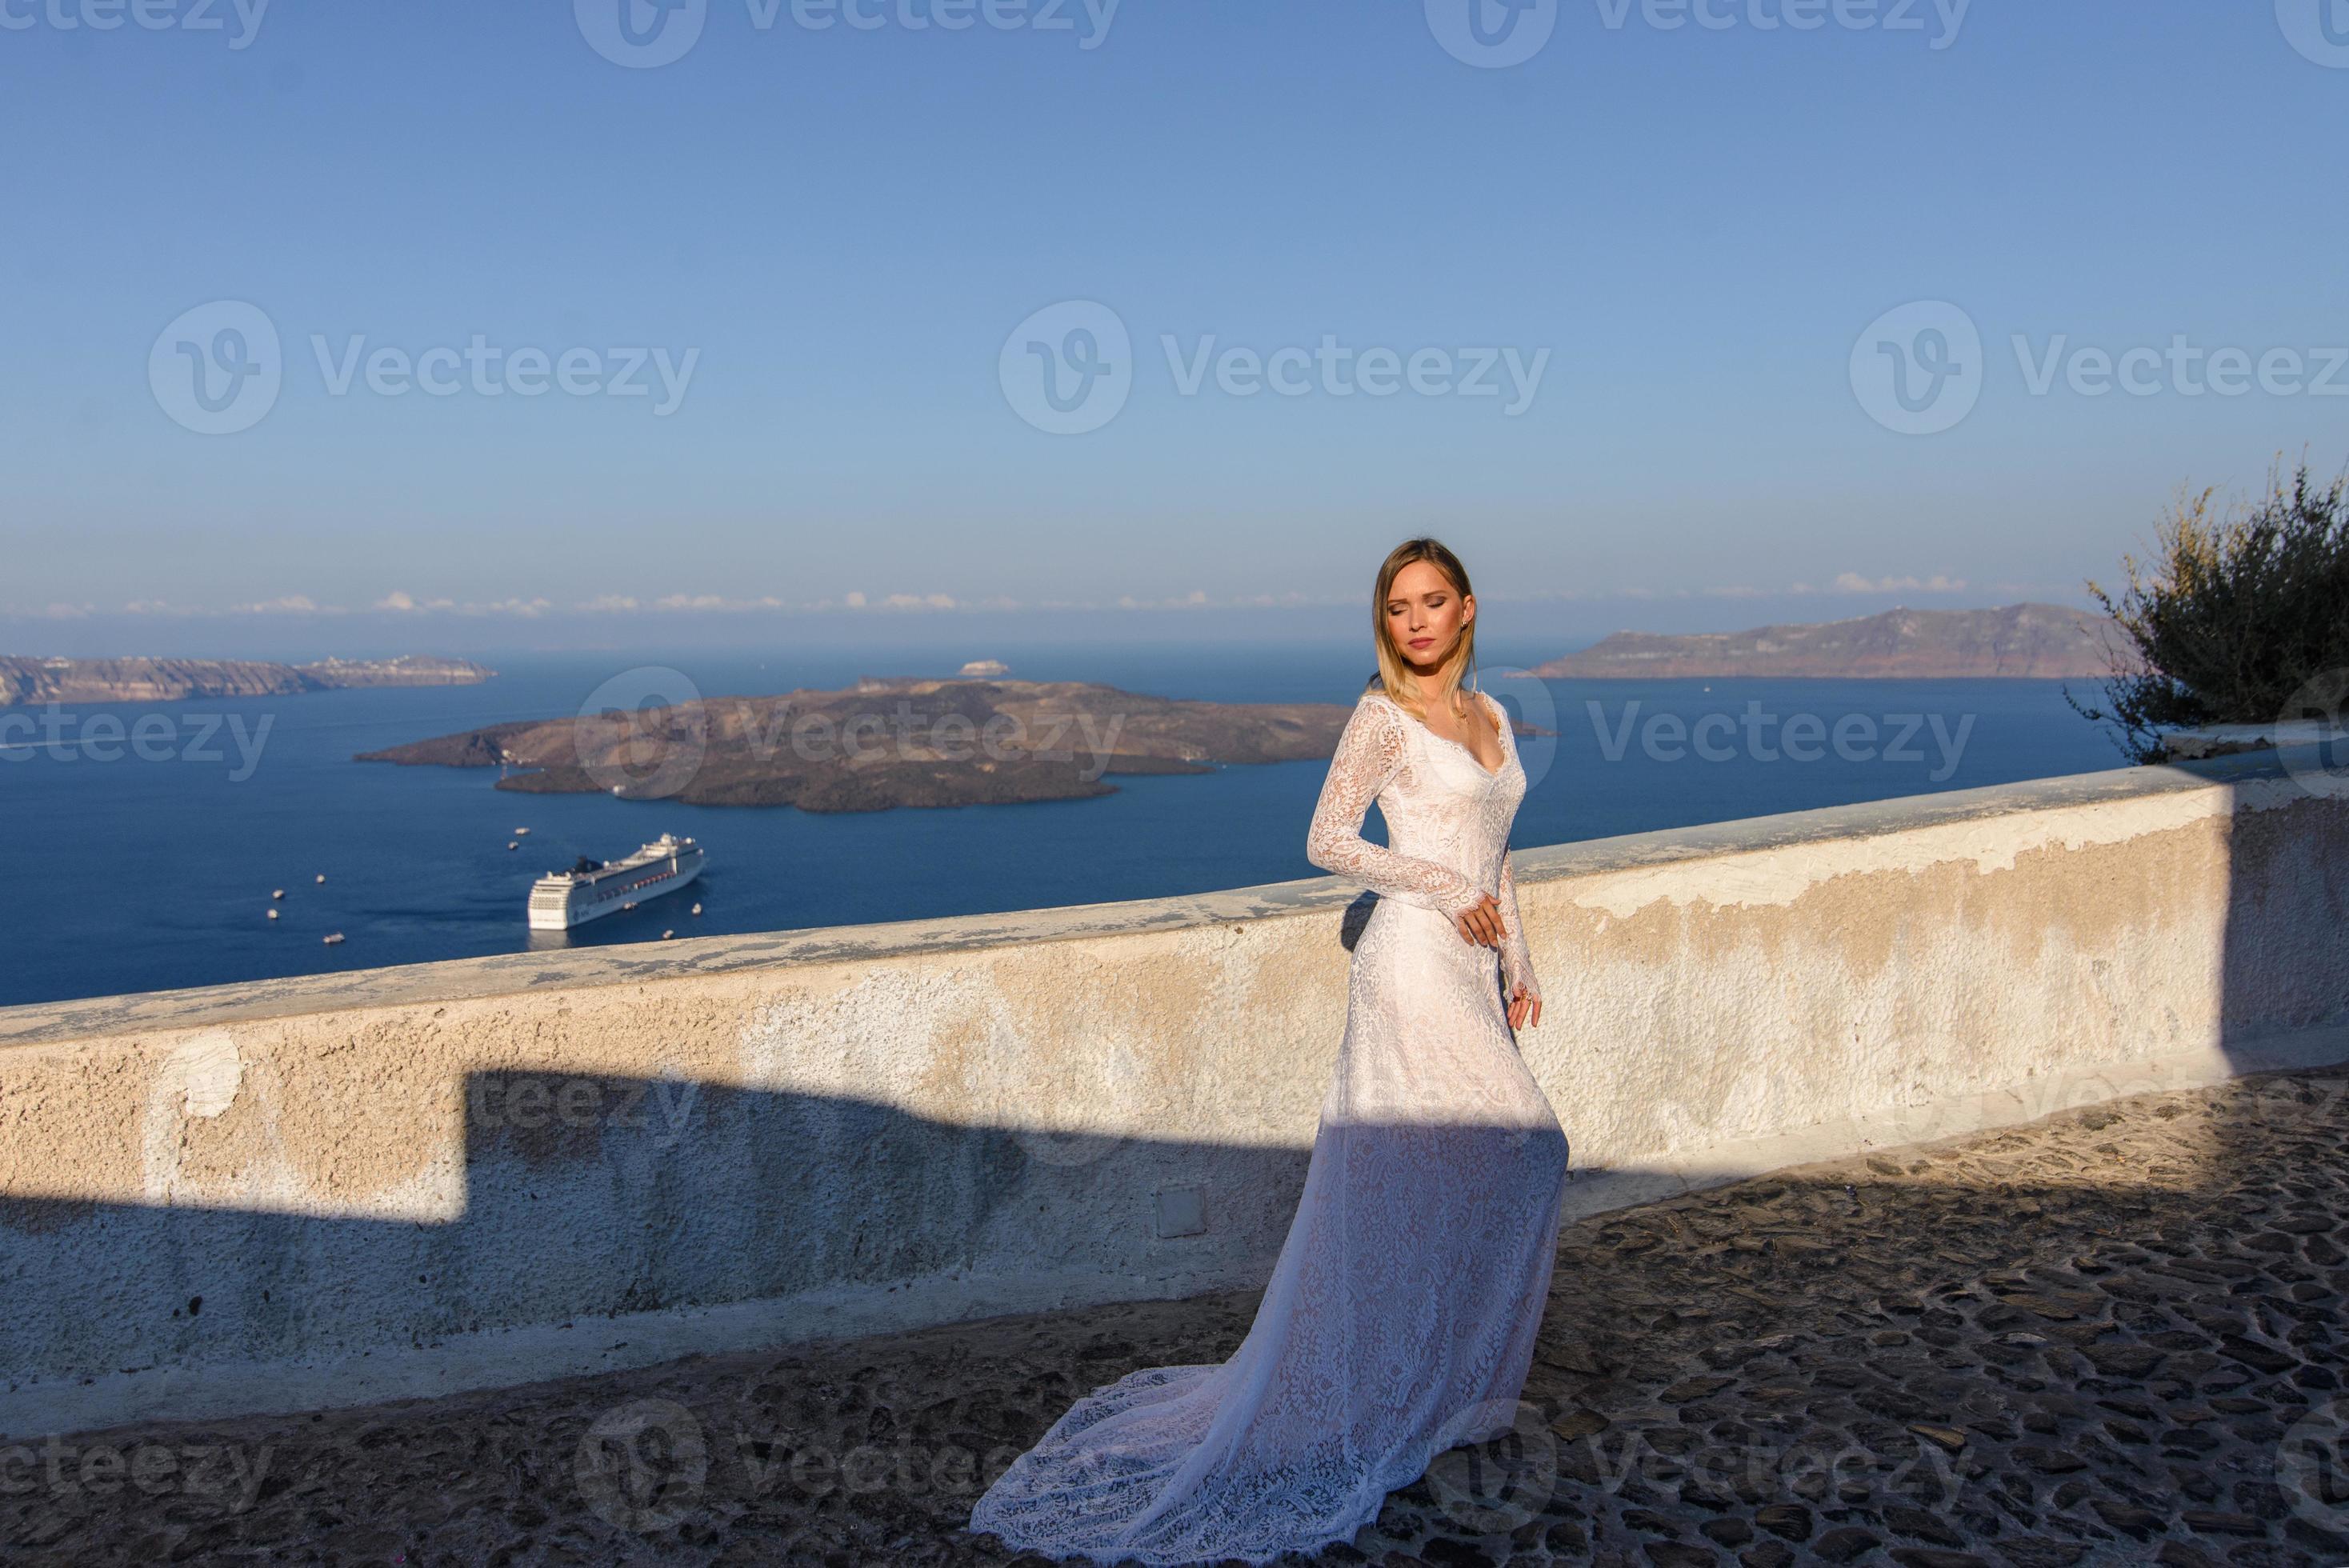 schöne braut in einem weißen kleid, das vor dem hintergrund des mittelmeers in thira, santorini aufwirft. foto